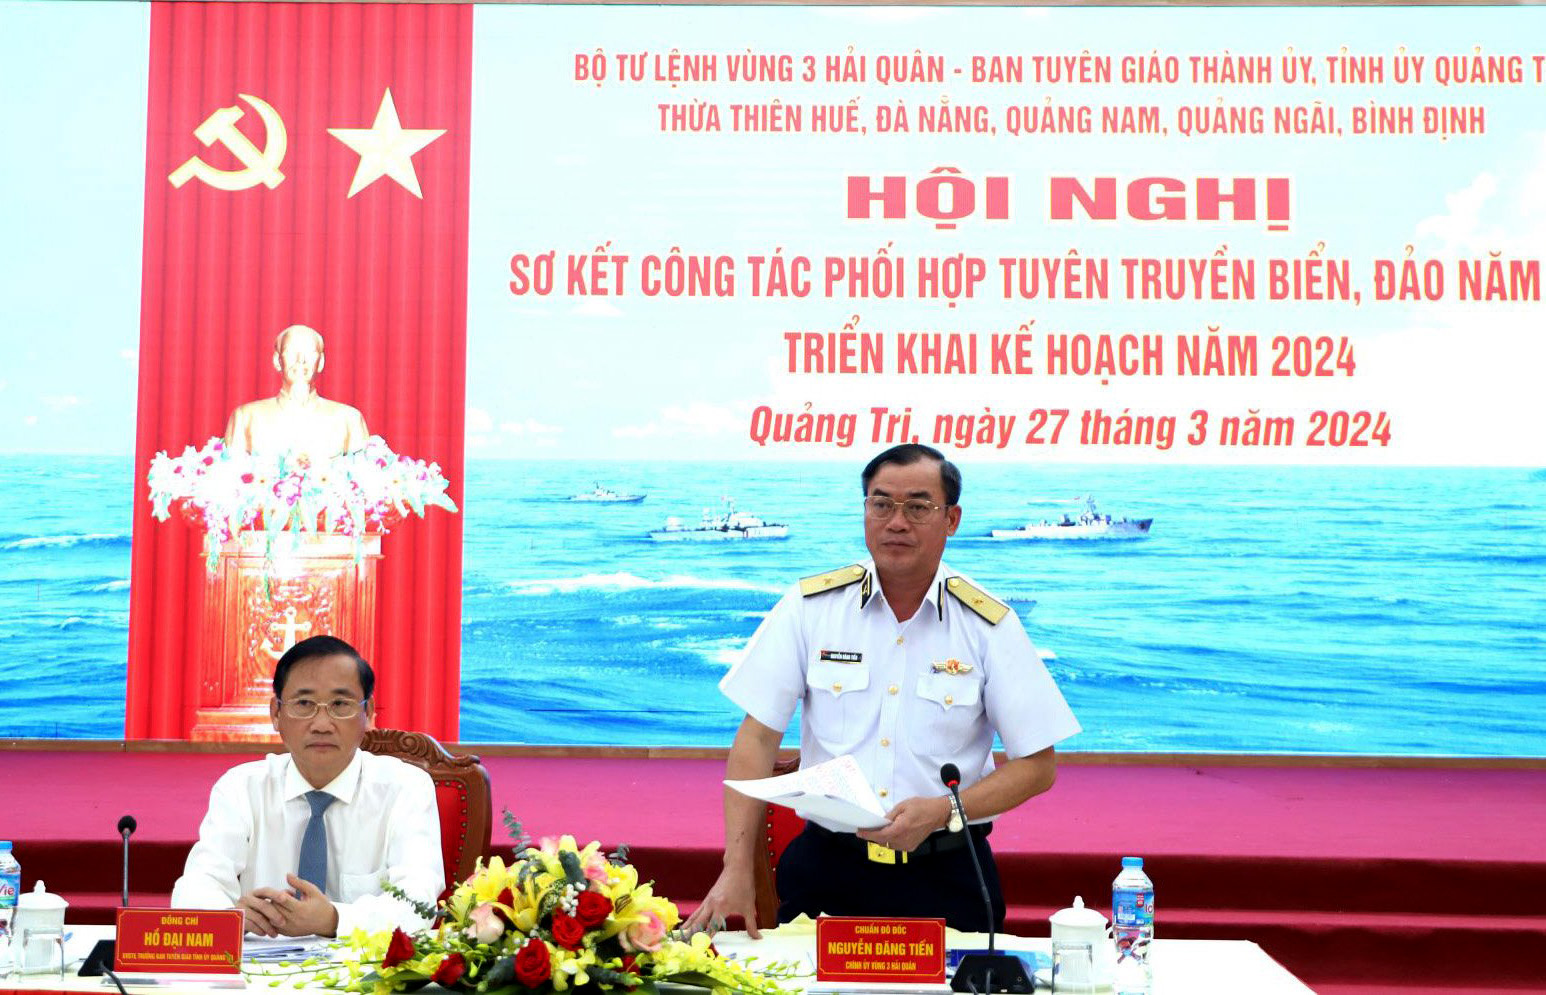 Các đồng chí: Chuẩn Đô đốc Nguyễn Đăng Tiến - Chính ủy Vùng 3 Hải quân; Hồ Đại Nam - Ủy viên Ban Thường vụ, Trưởng ban Tuyên giáo Tỉnh ủy Quảng Trị đồng chủ trì hội nghị